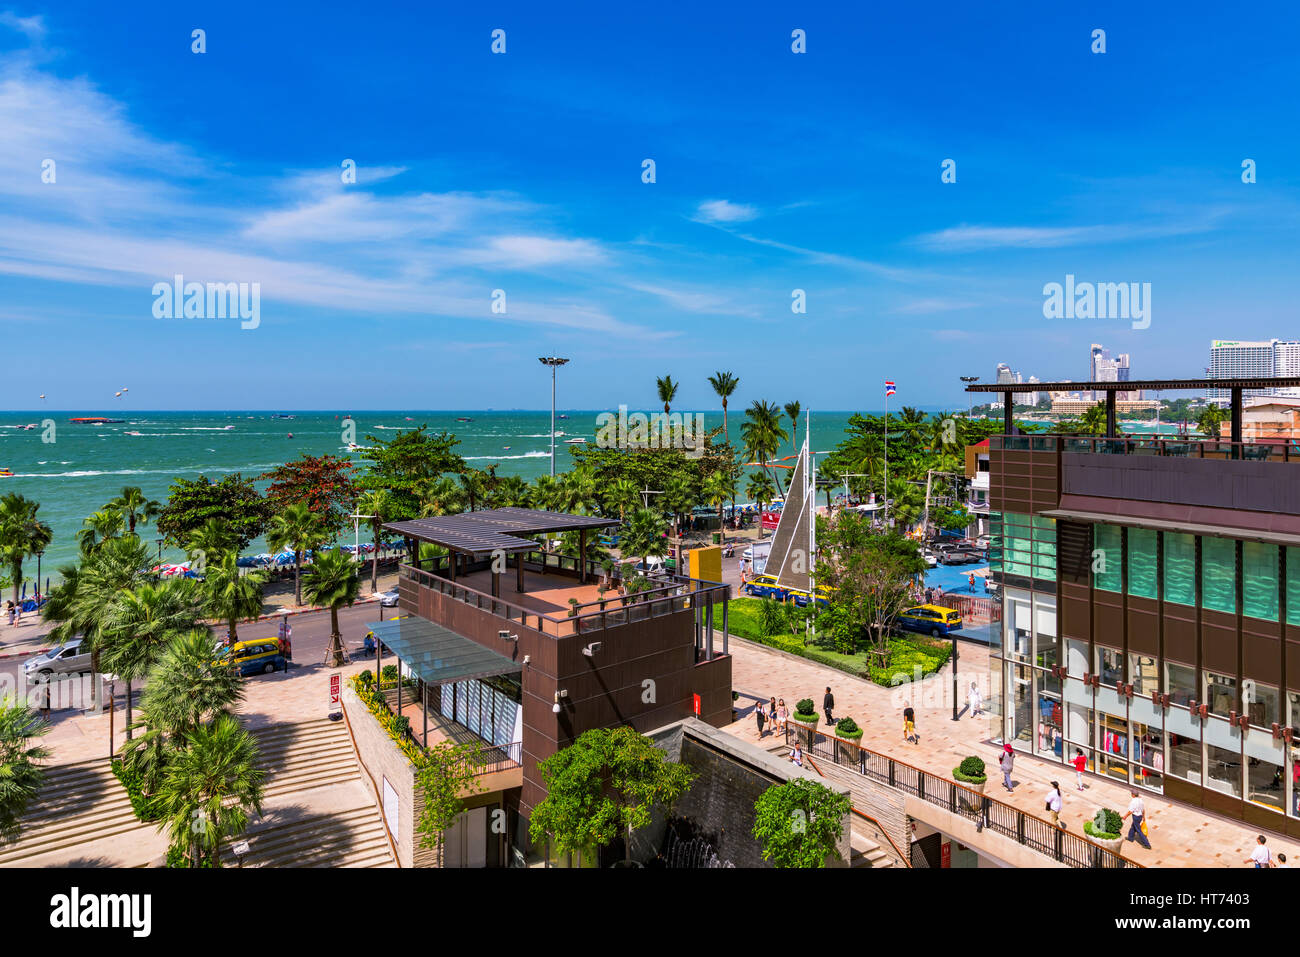 PATTAYA, Tailandia - 24 gennaio: Vista della spiaggia di Pattaya road waterfront area e l'ingresso al Central World Shopping Mall il quale si trova nel centro cittadino di ar Foto Stock